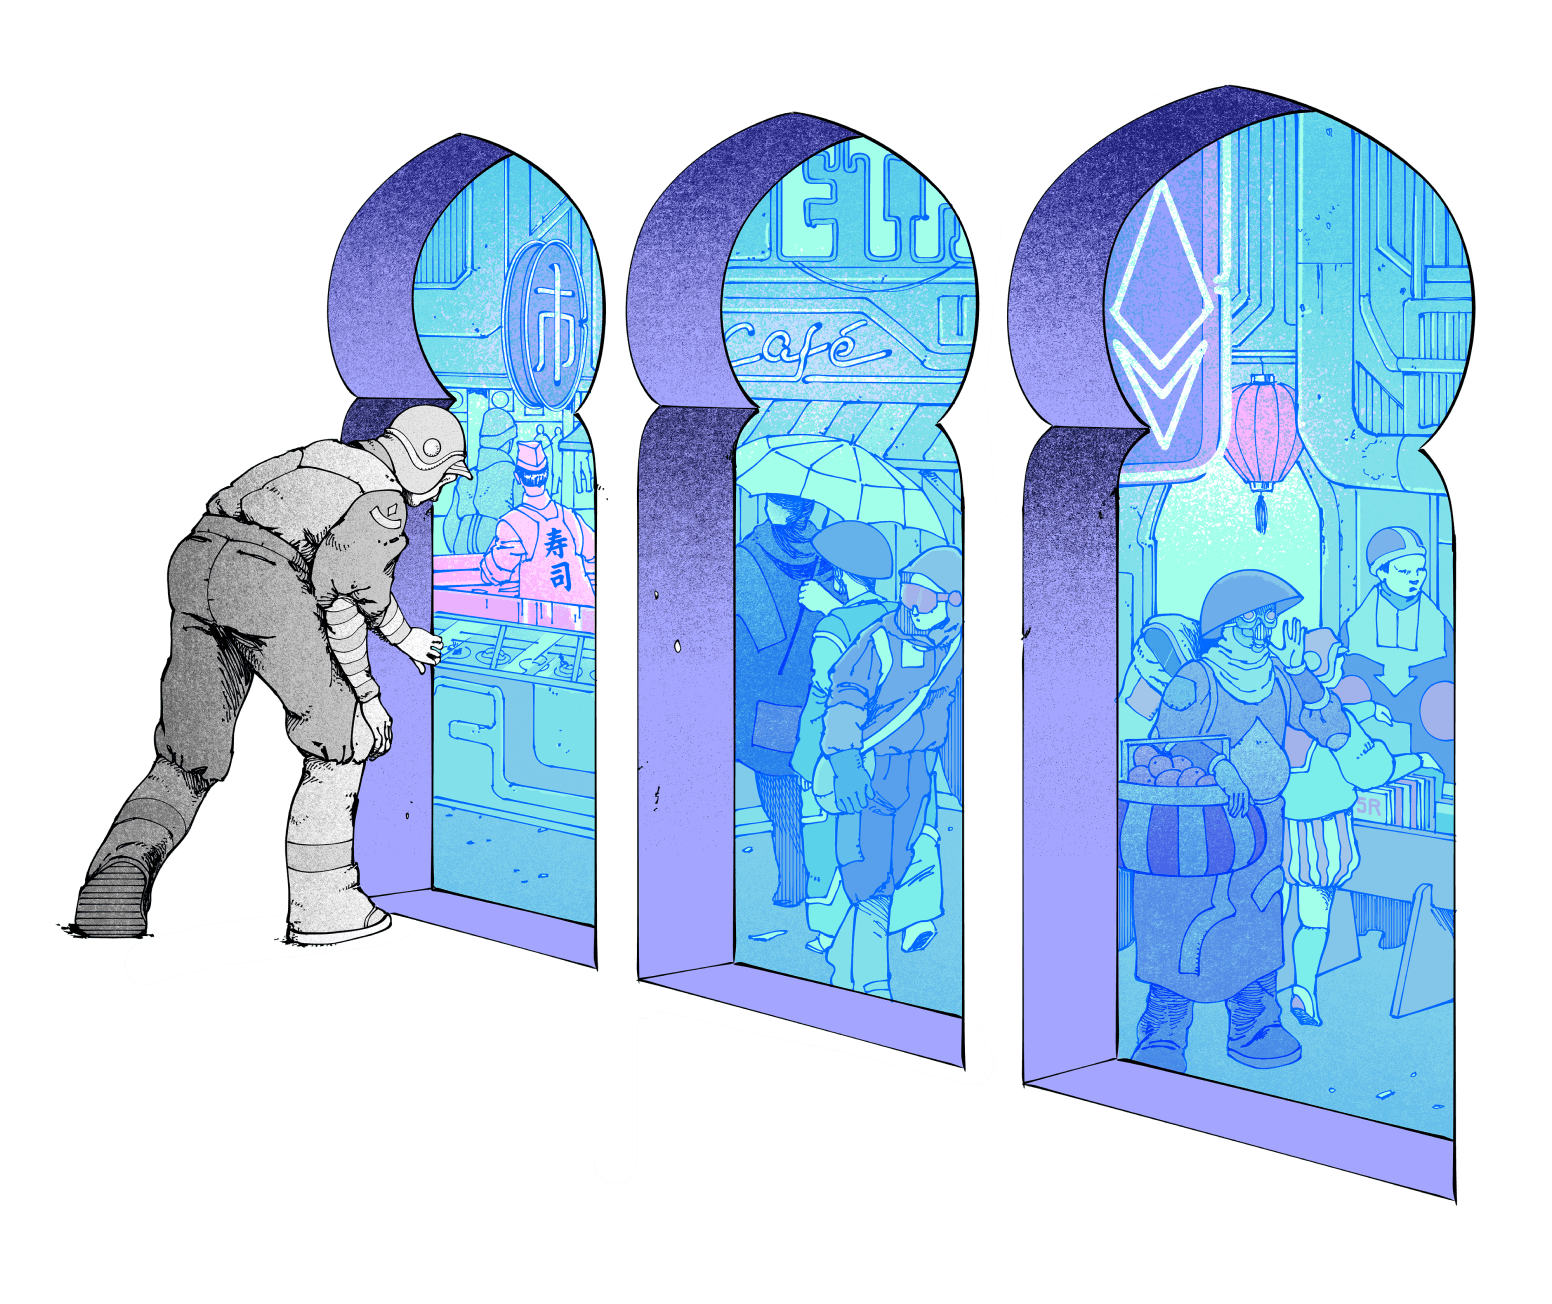 Il·lustració d'una persona que entra en un basar, que pretén representar Ethereum